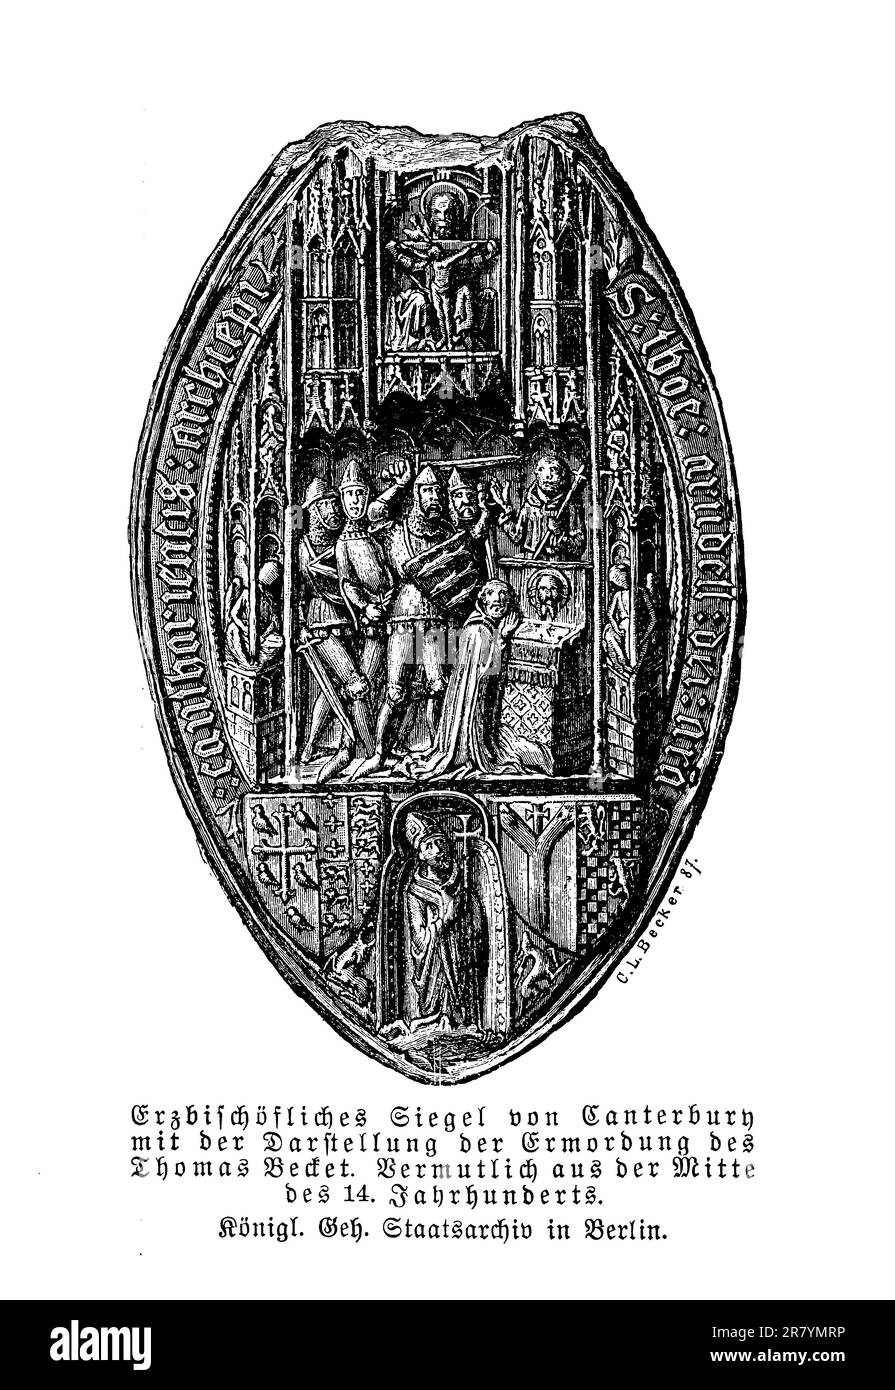 Siegel des Erzbischofs von Canterbury aus dem 14. Jahrhundert, das den Mord an Becket im Jahr 1170 darstellt Stockfoto